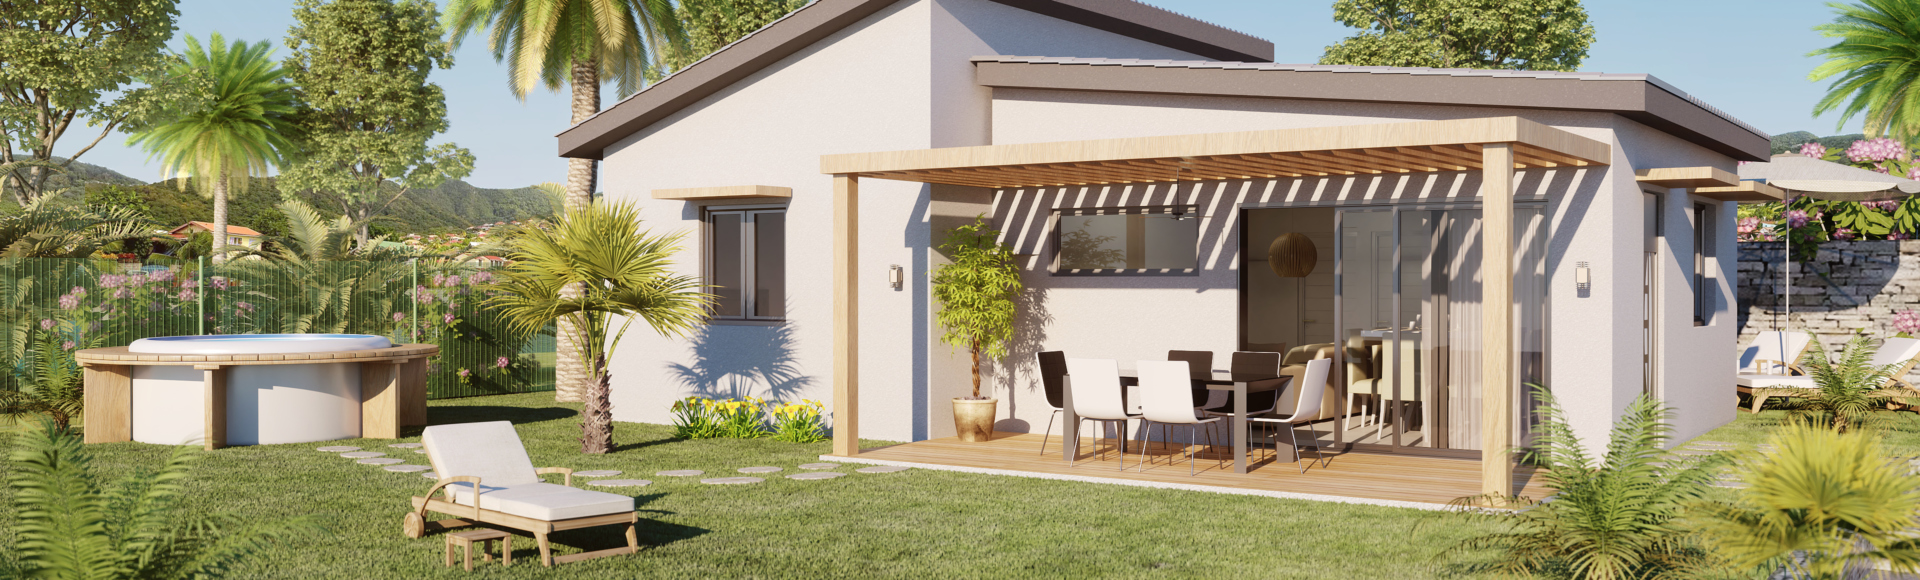 perspective 3D villa - architecture - freelance 3d